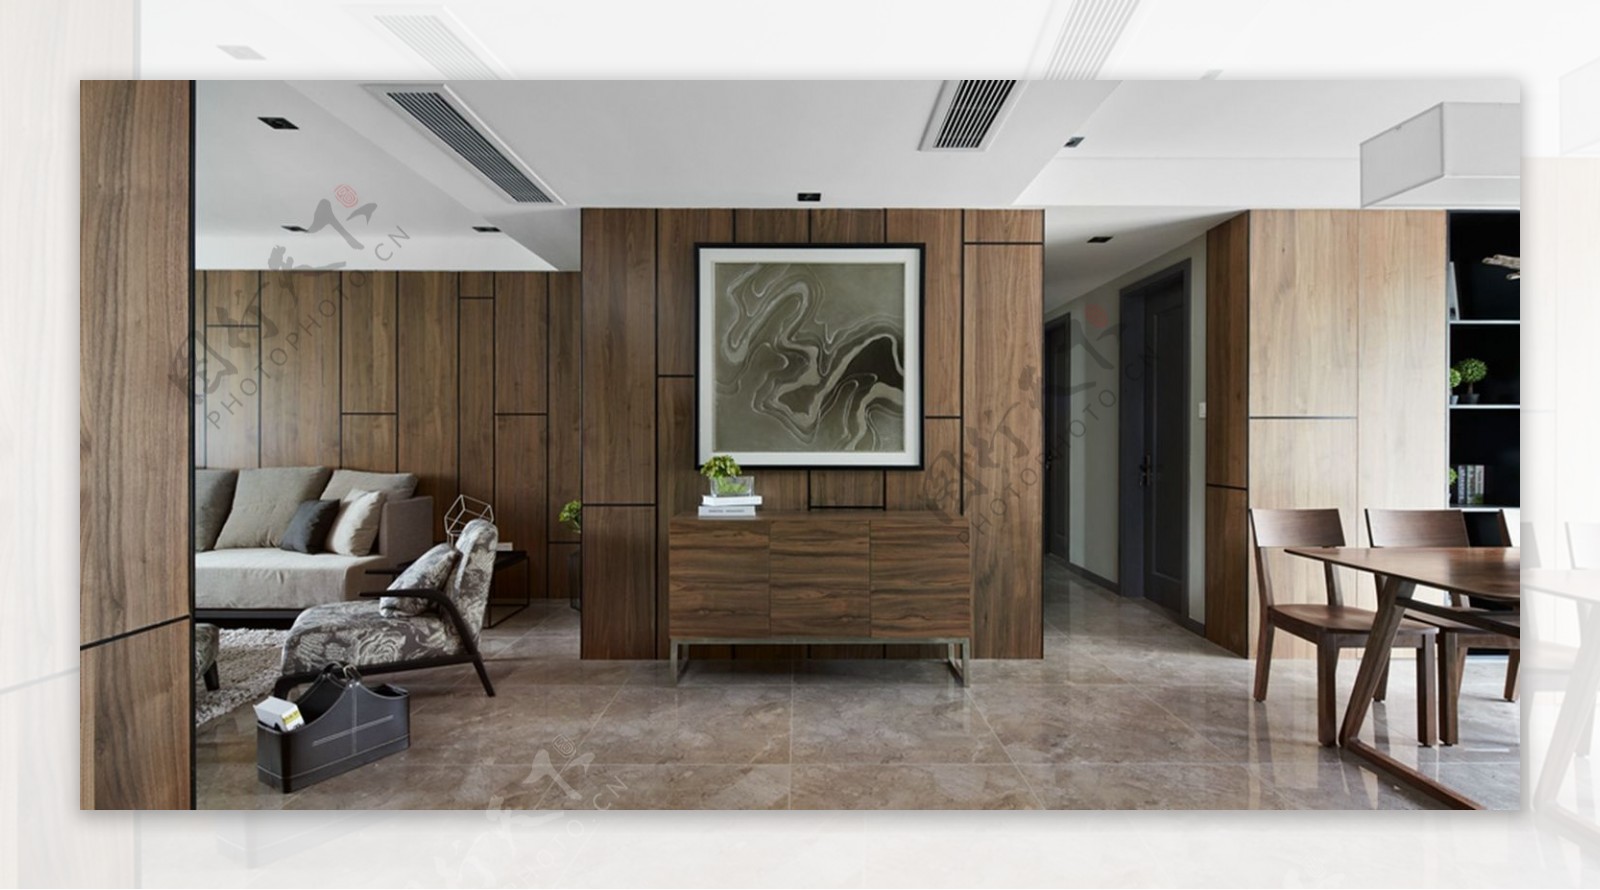 中式雅致客厅深褐色瓷砖地板室内装修效果图